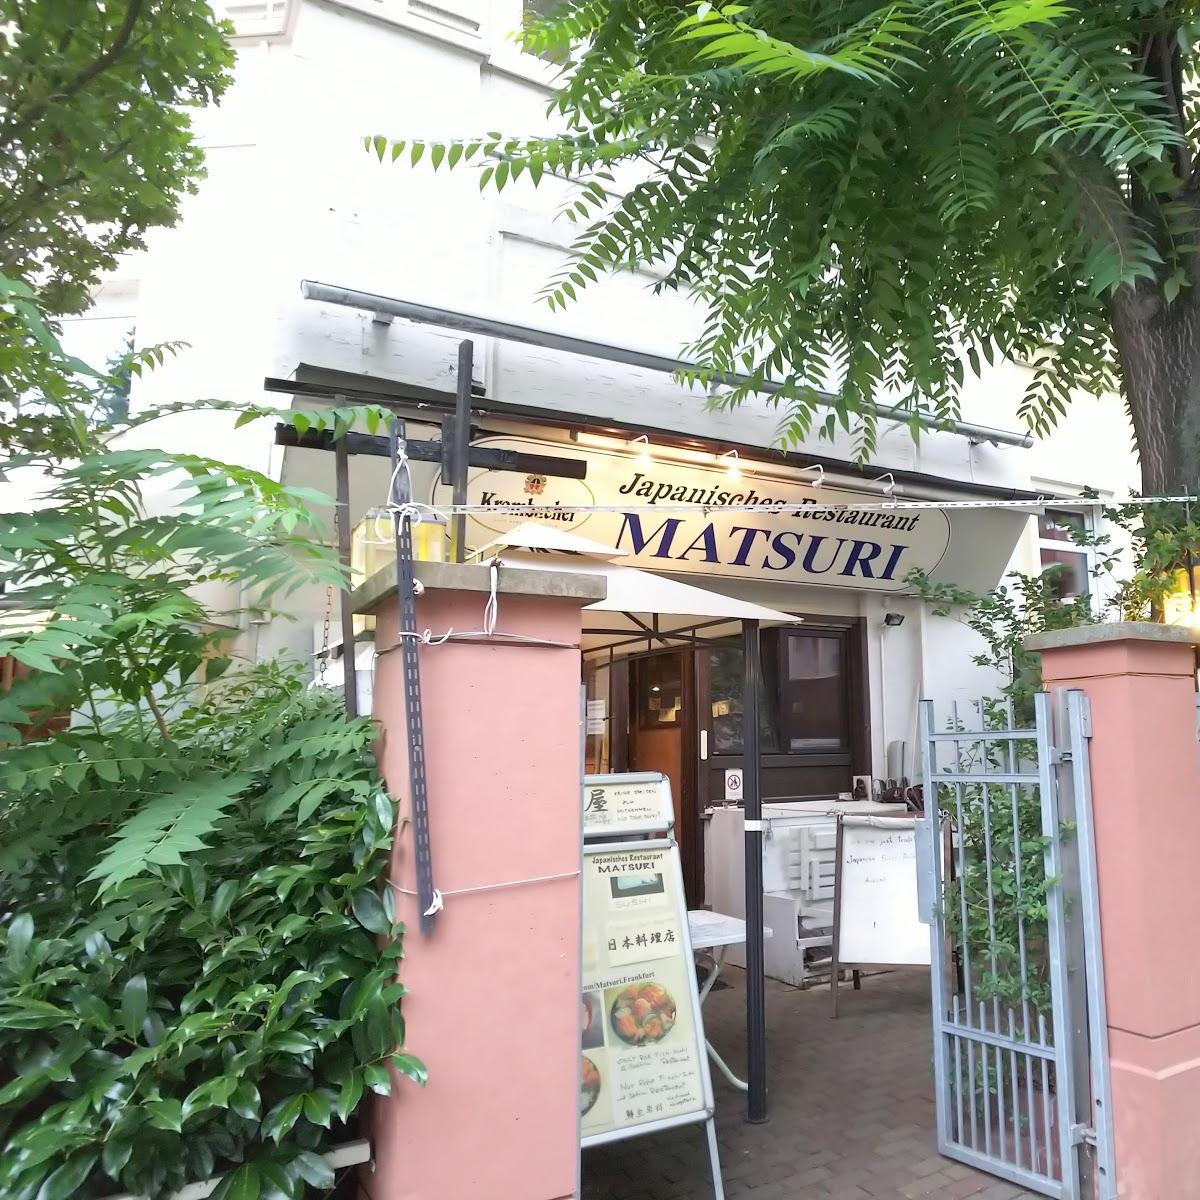 Restaurant "Matsuri Restaurant" in Frankfurt am Main